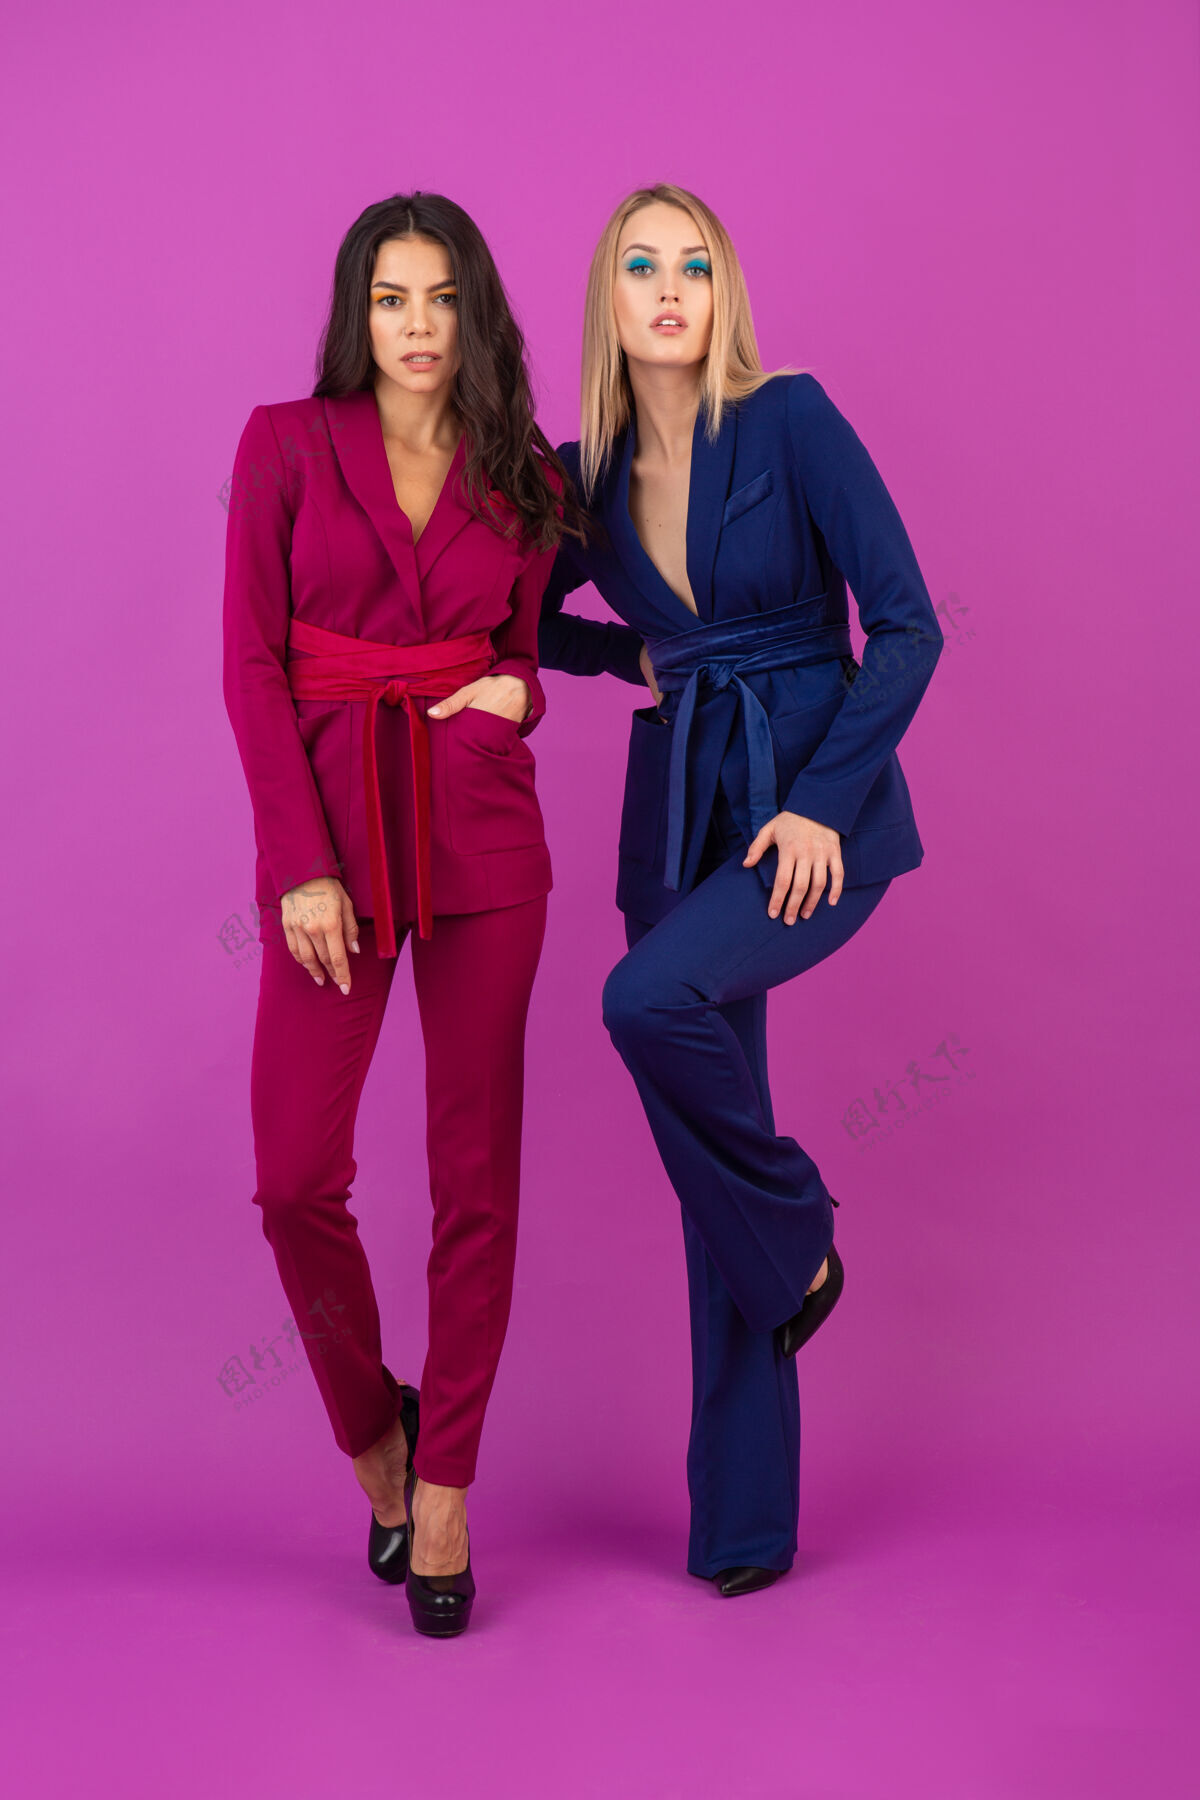 秋天高级时尚风格紫罗兰色墙壁上两位魅力四射的女士 身着紫色和蓝色的时尚多彩晚礼服 朋友们一起玩乐 时尚潮流穿着优雅多彩